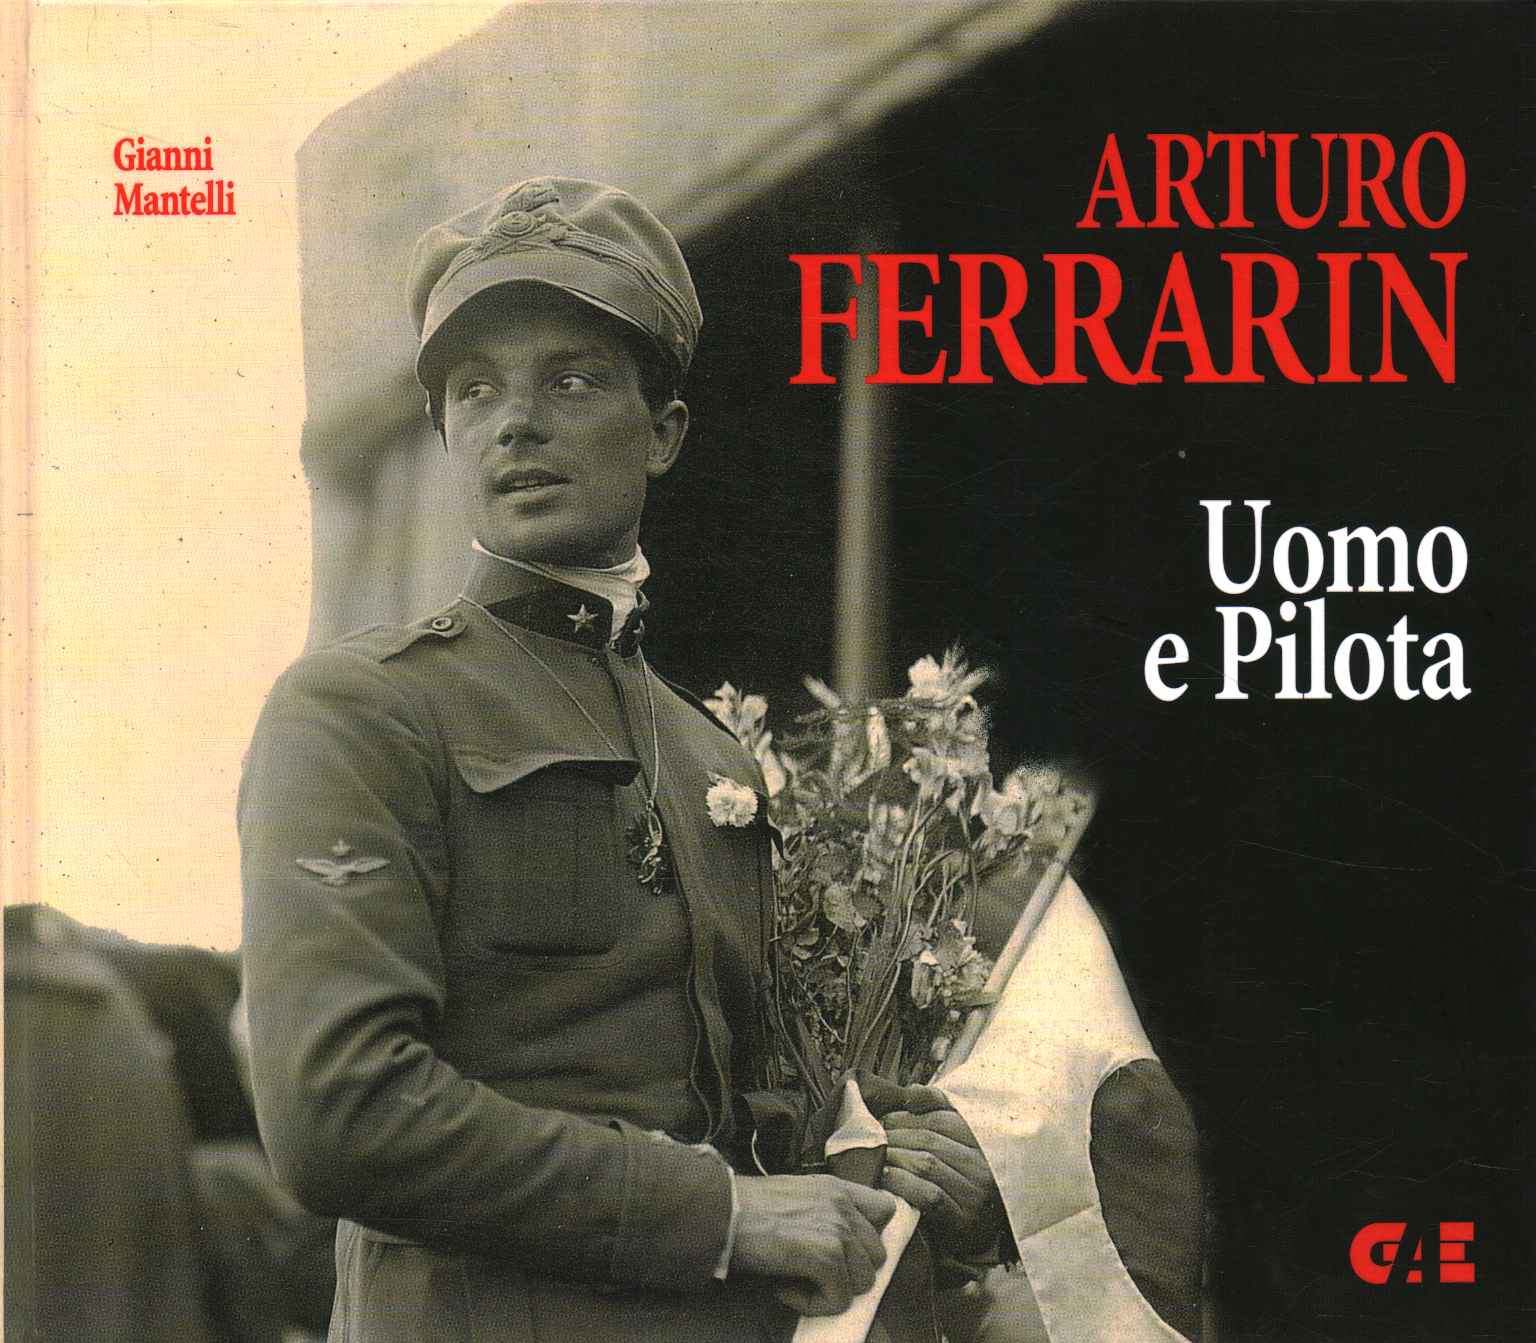 Arturo Ferrarin, Arturo Ferrarin. Hombre y piloto